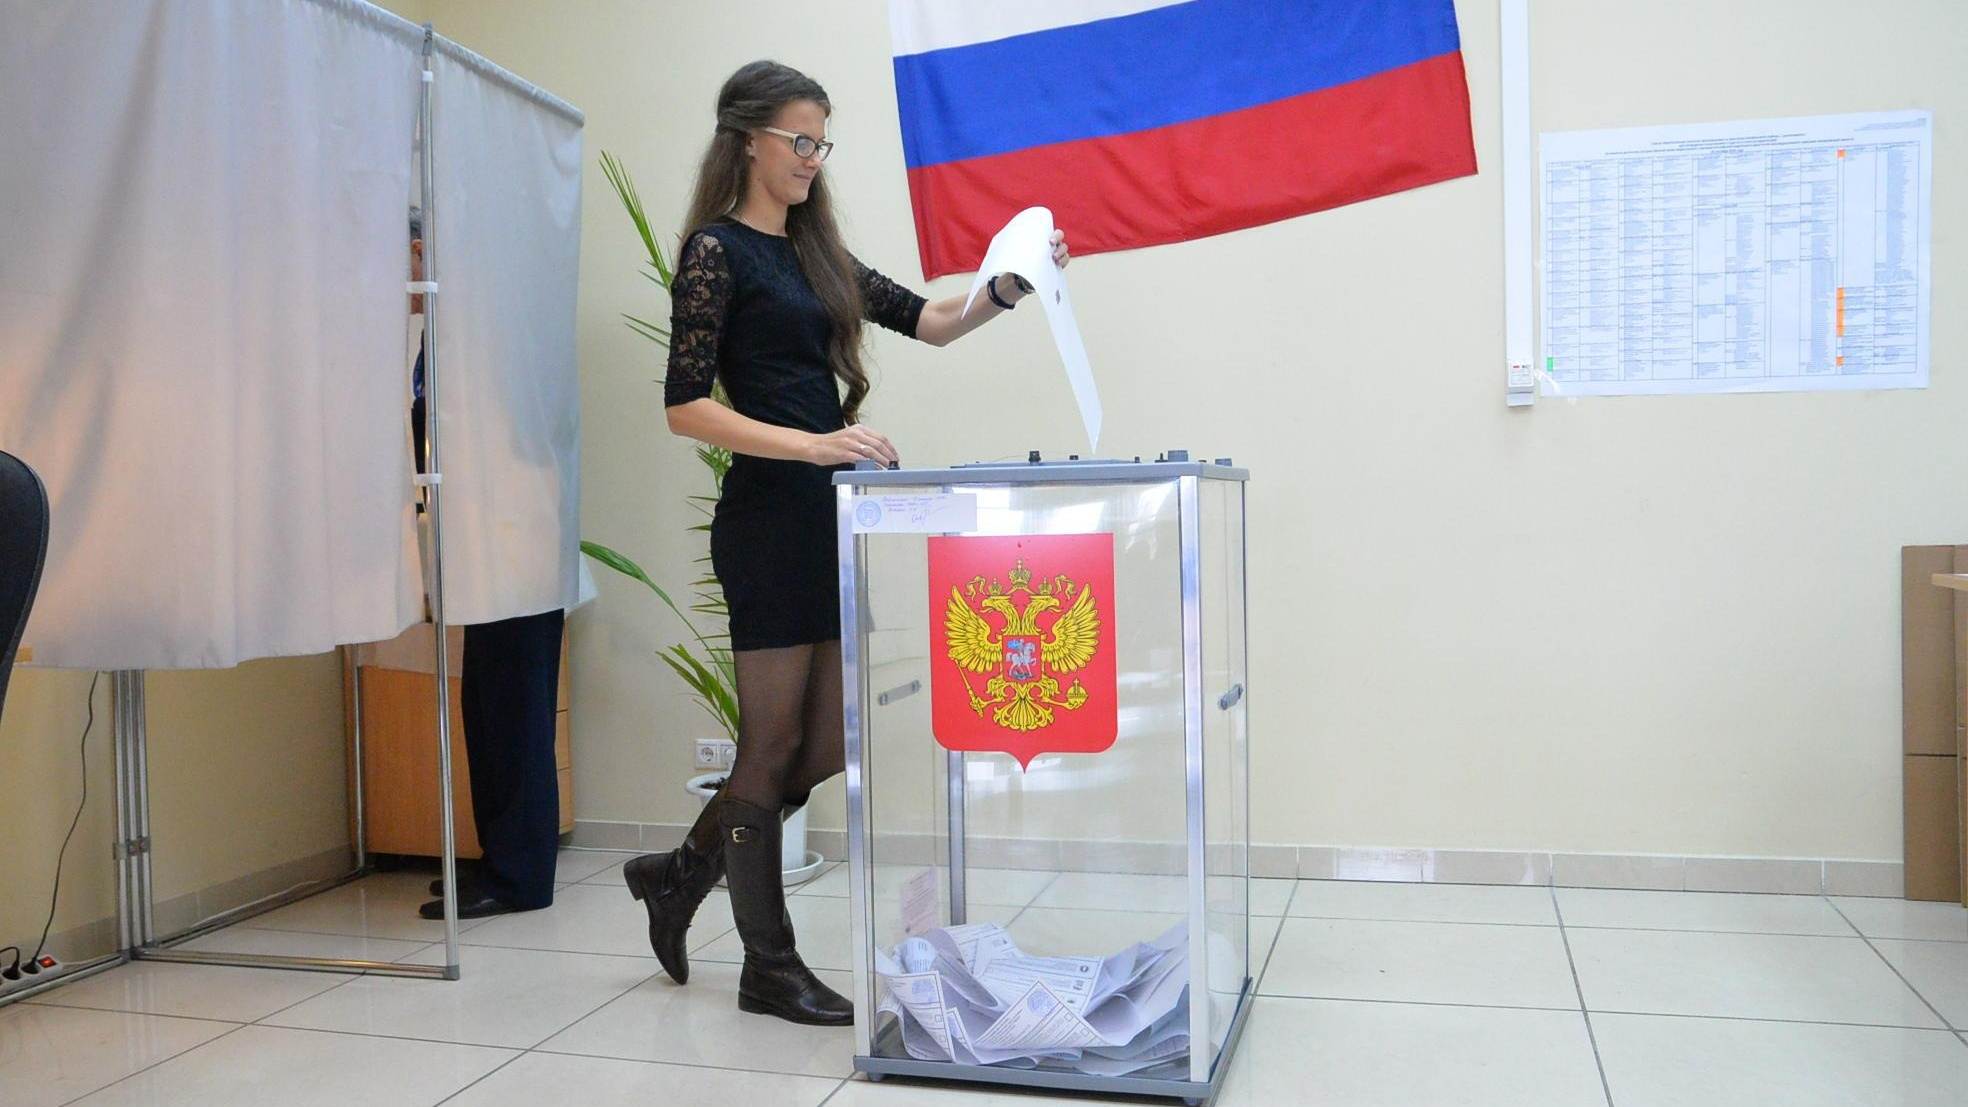 Вместо пеньков — шатры: как в Челябинске будут проходить выборы президента